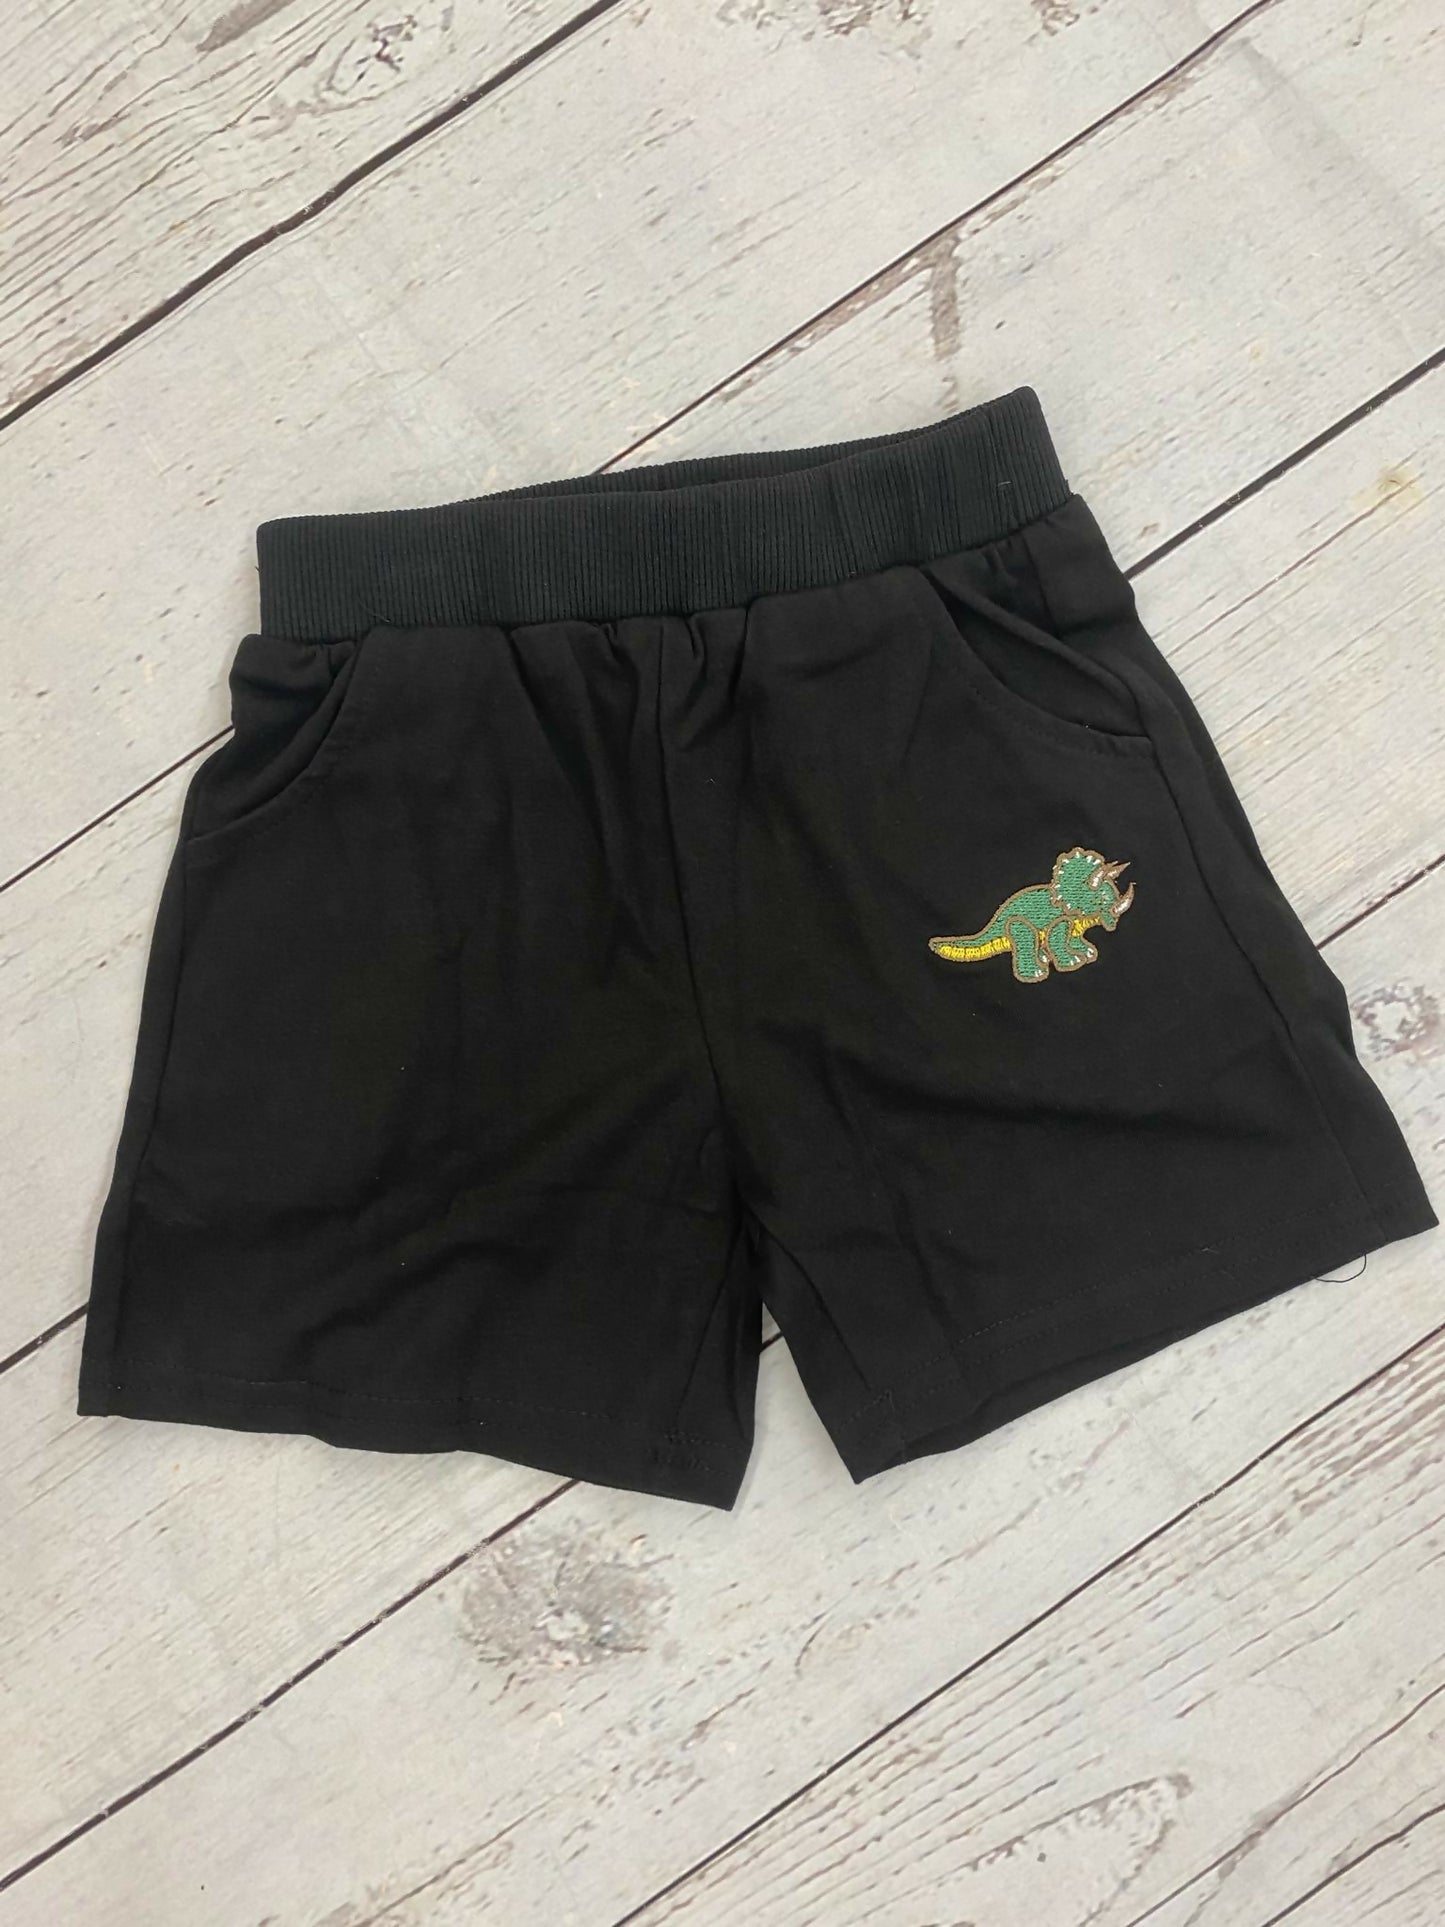 Black Dinosaur Boy Shorts